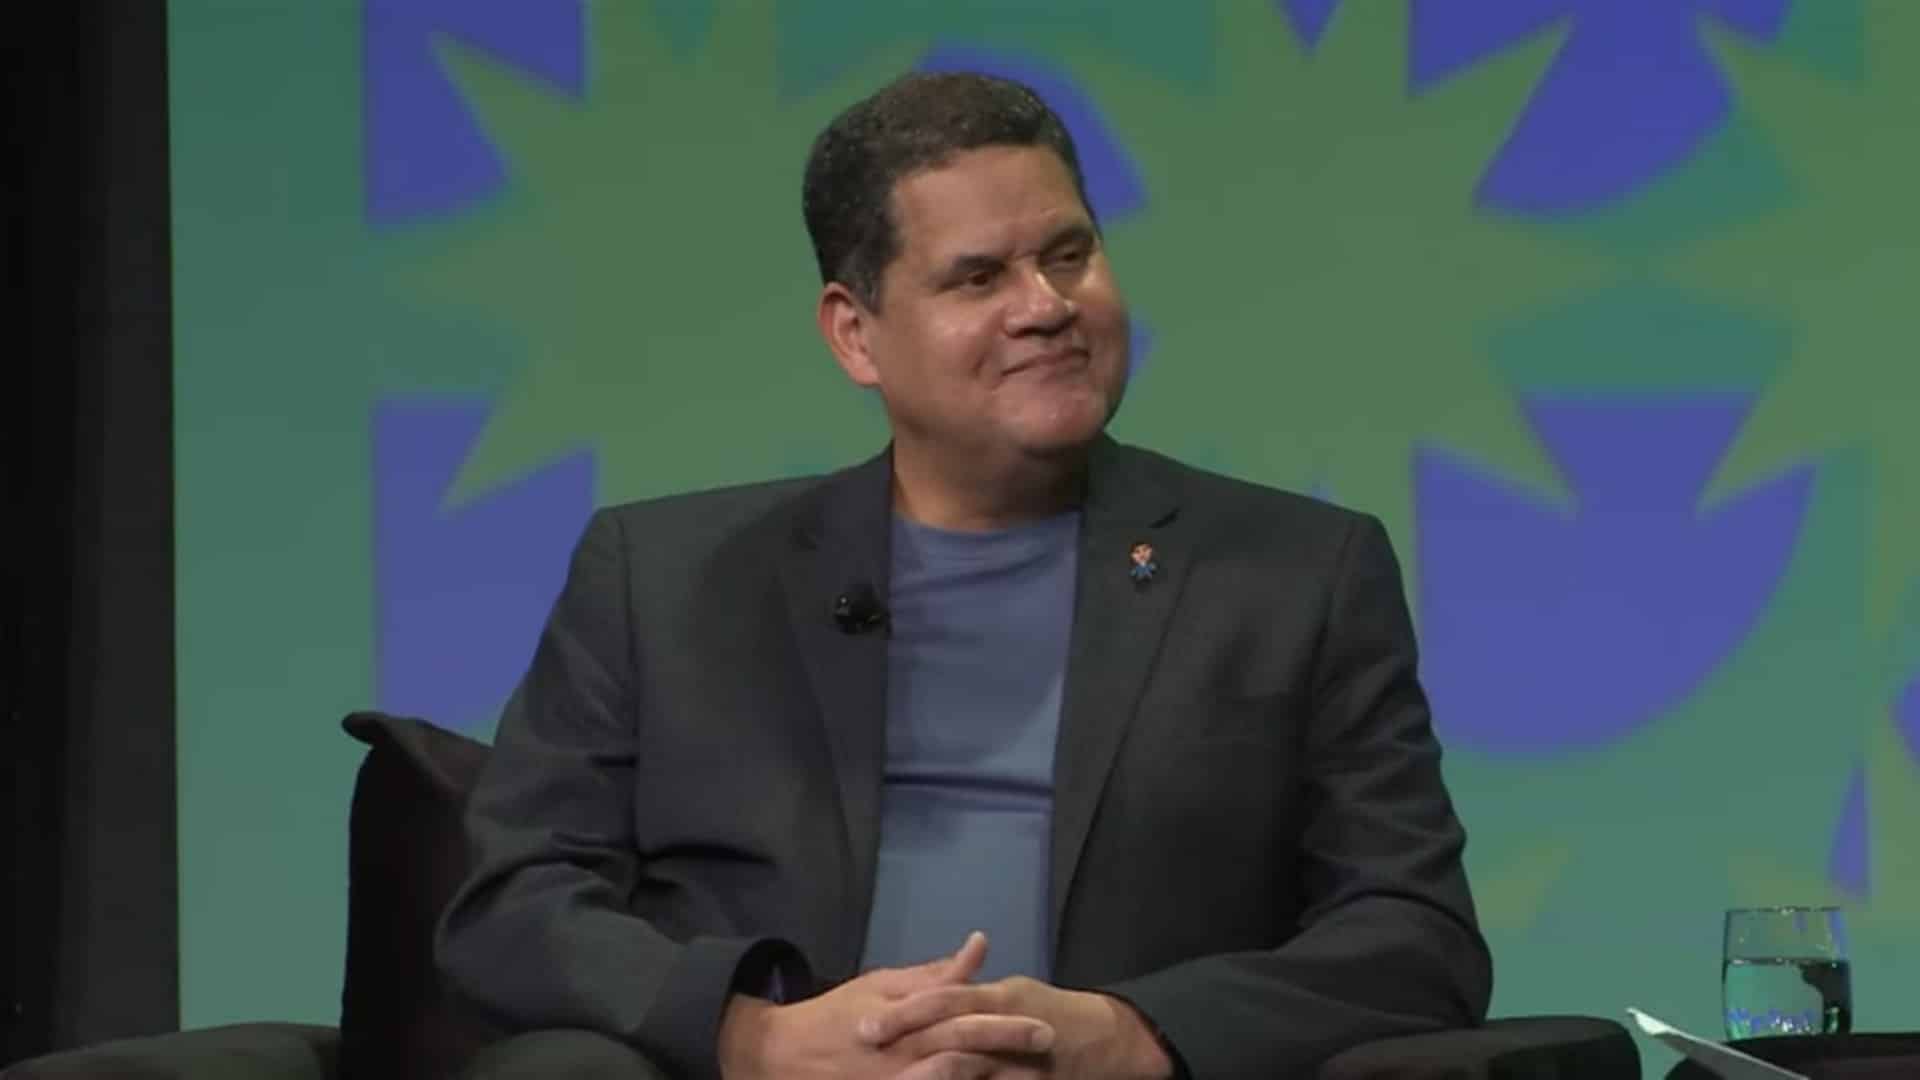 Reggie Fils-Aime cree que Animal Crossing podría ser un buen juego de blockchain, GamersRD